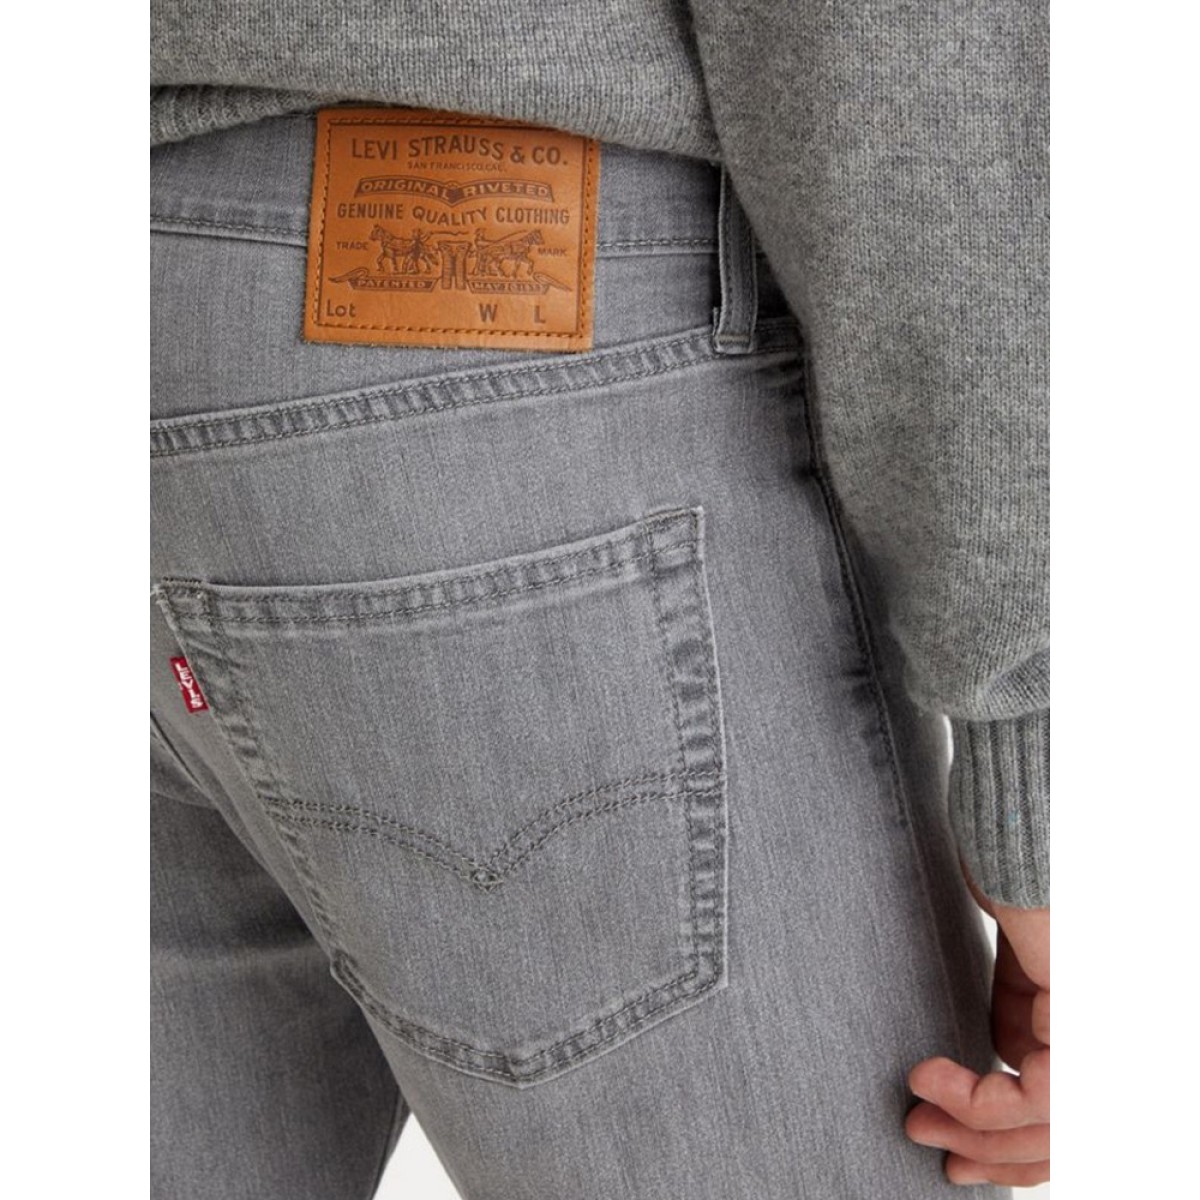 Levi's 512 slim taper jeans in gray wash